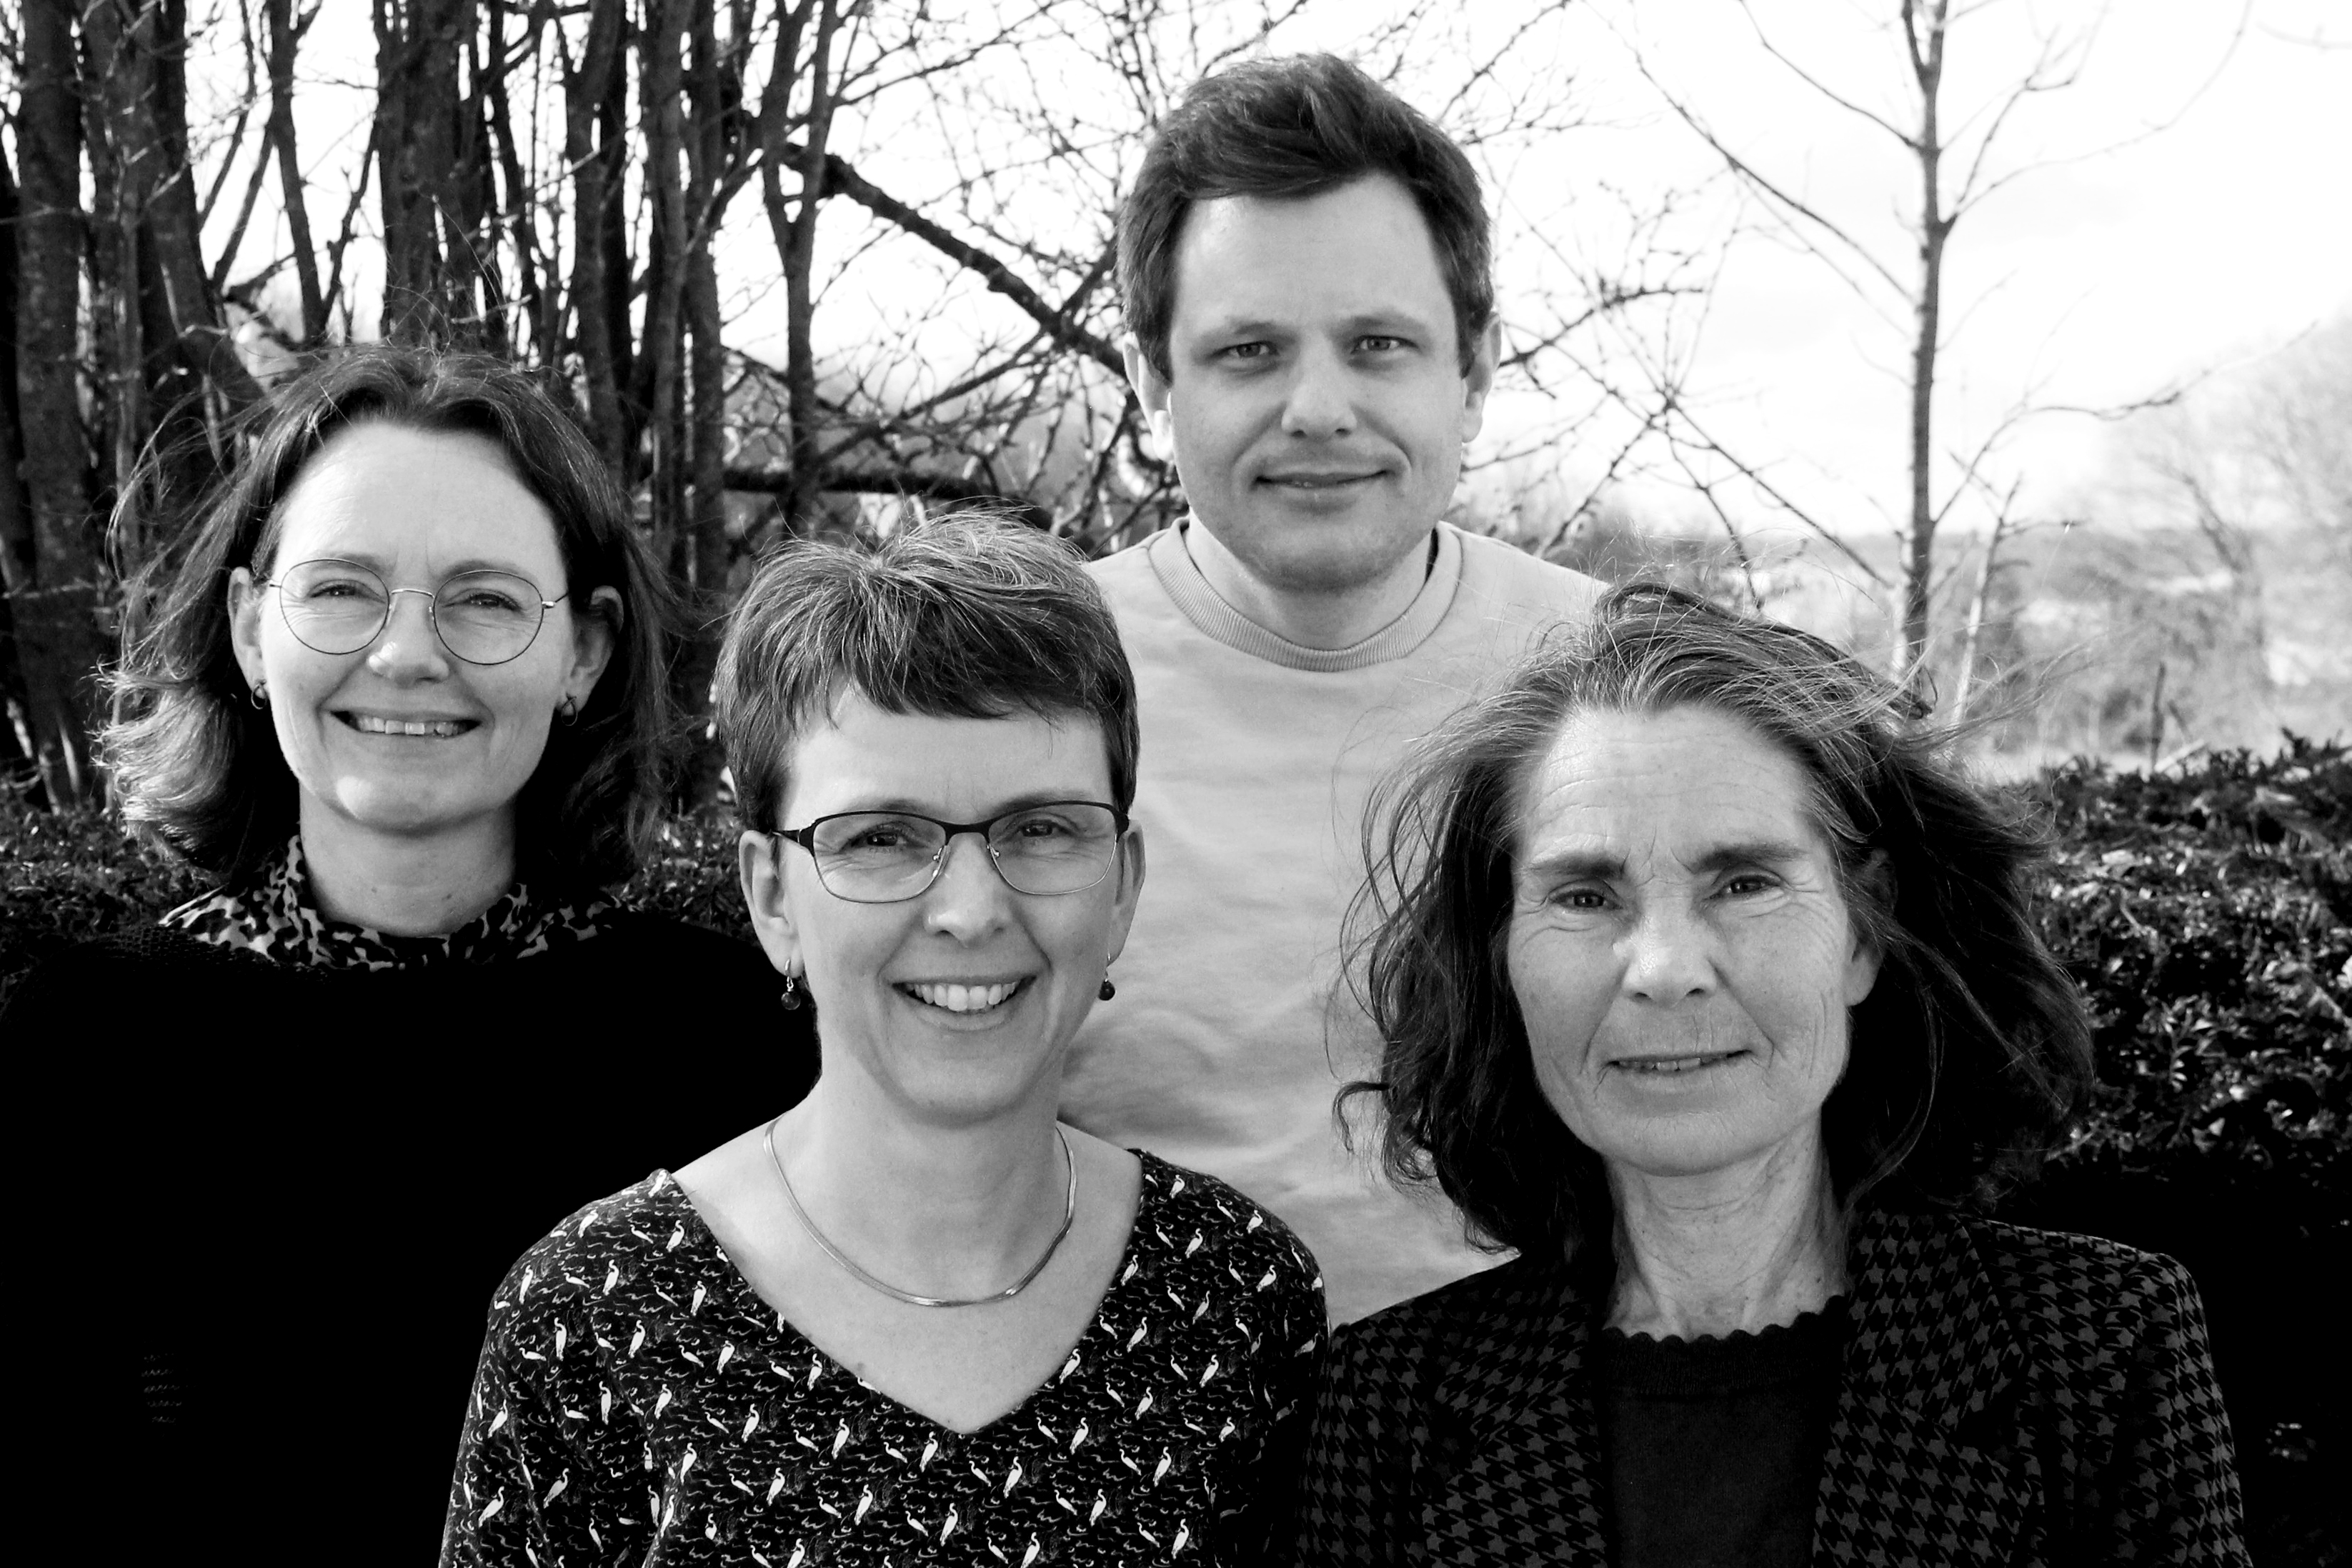 Bag undersøgelserne er blandt andre (fra venstre): Henriette Qvist, Gitte Dahl, Jakob Sevelsted og Simone Witzel. Foto: Søren Sander